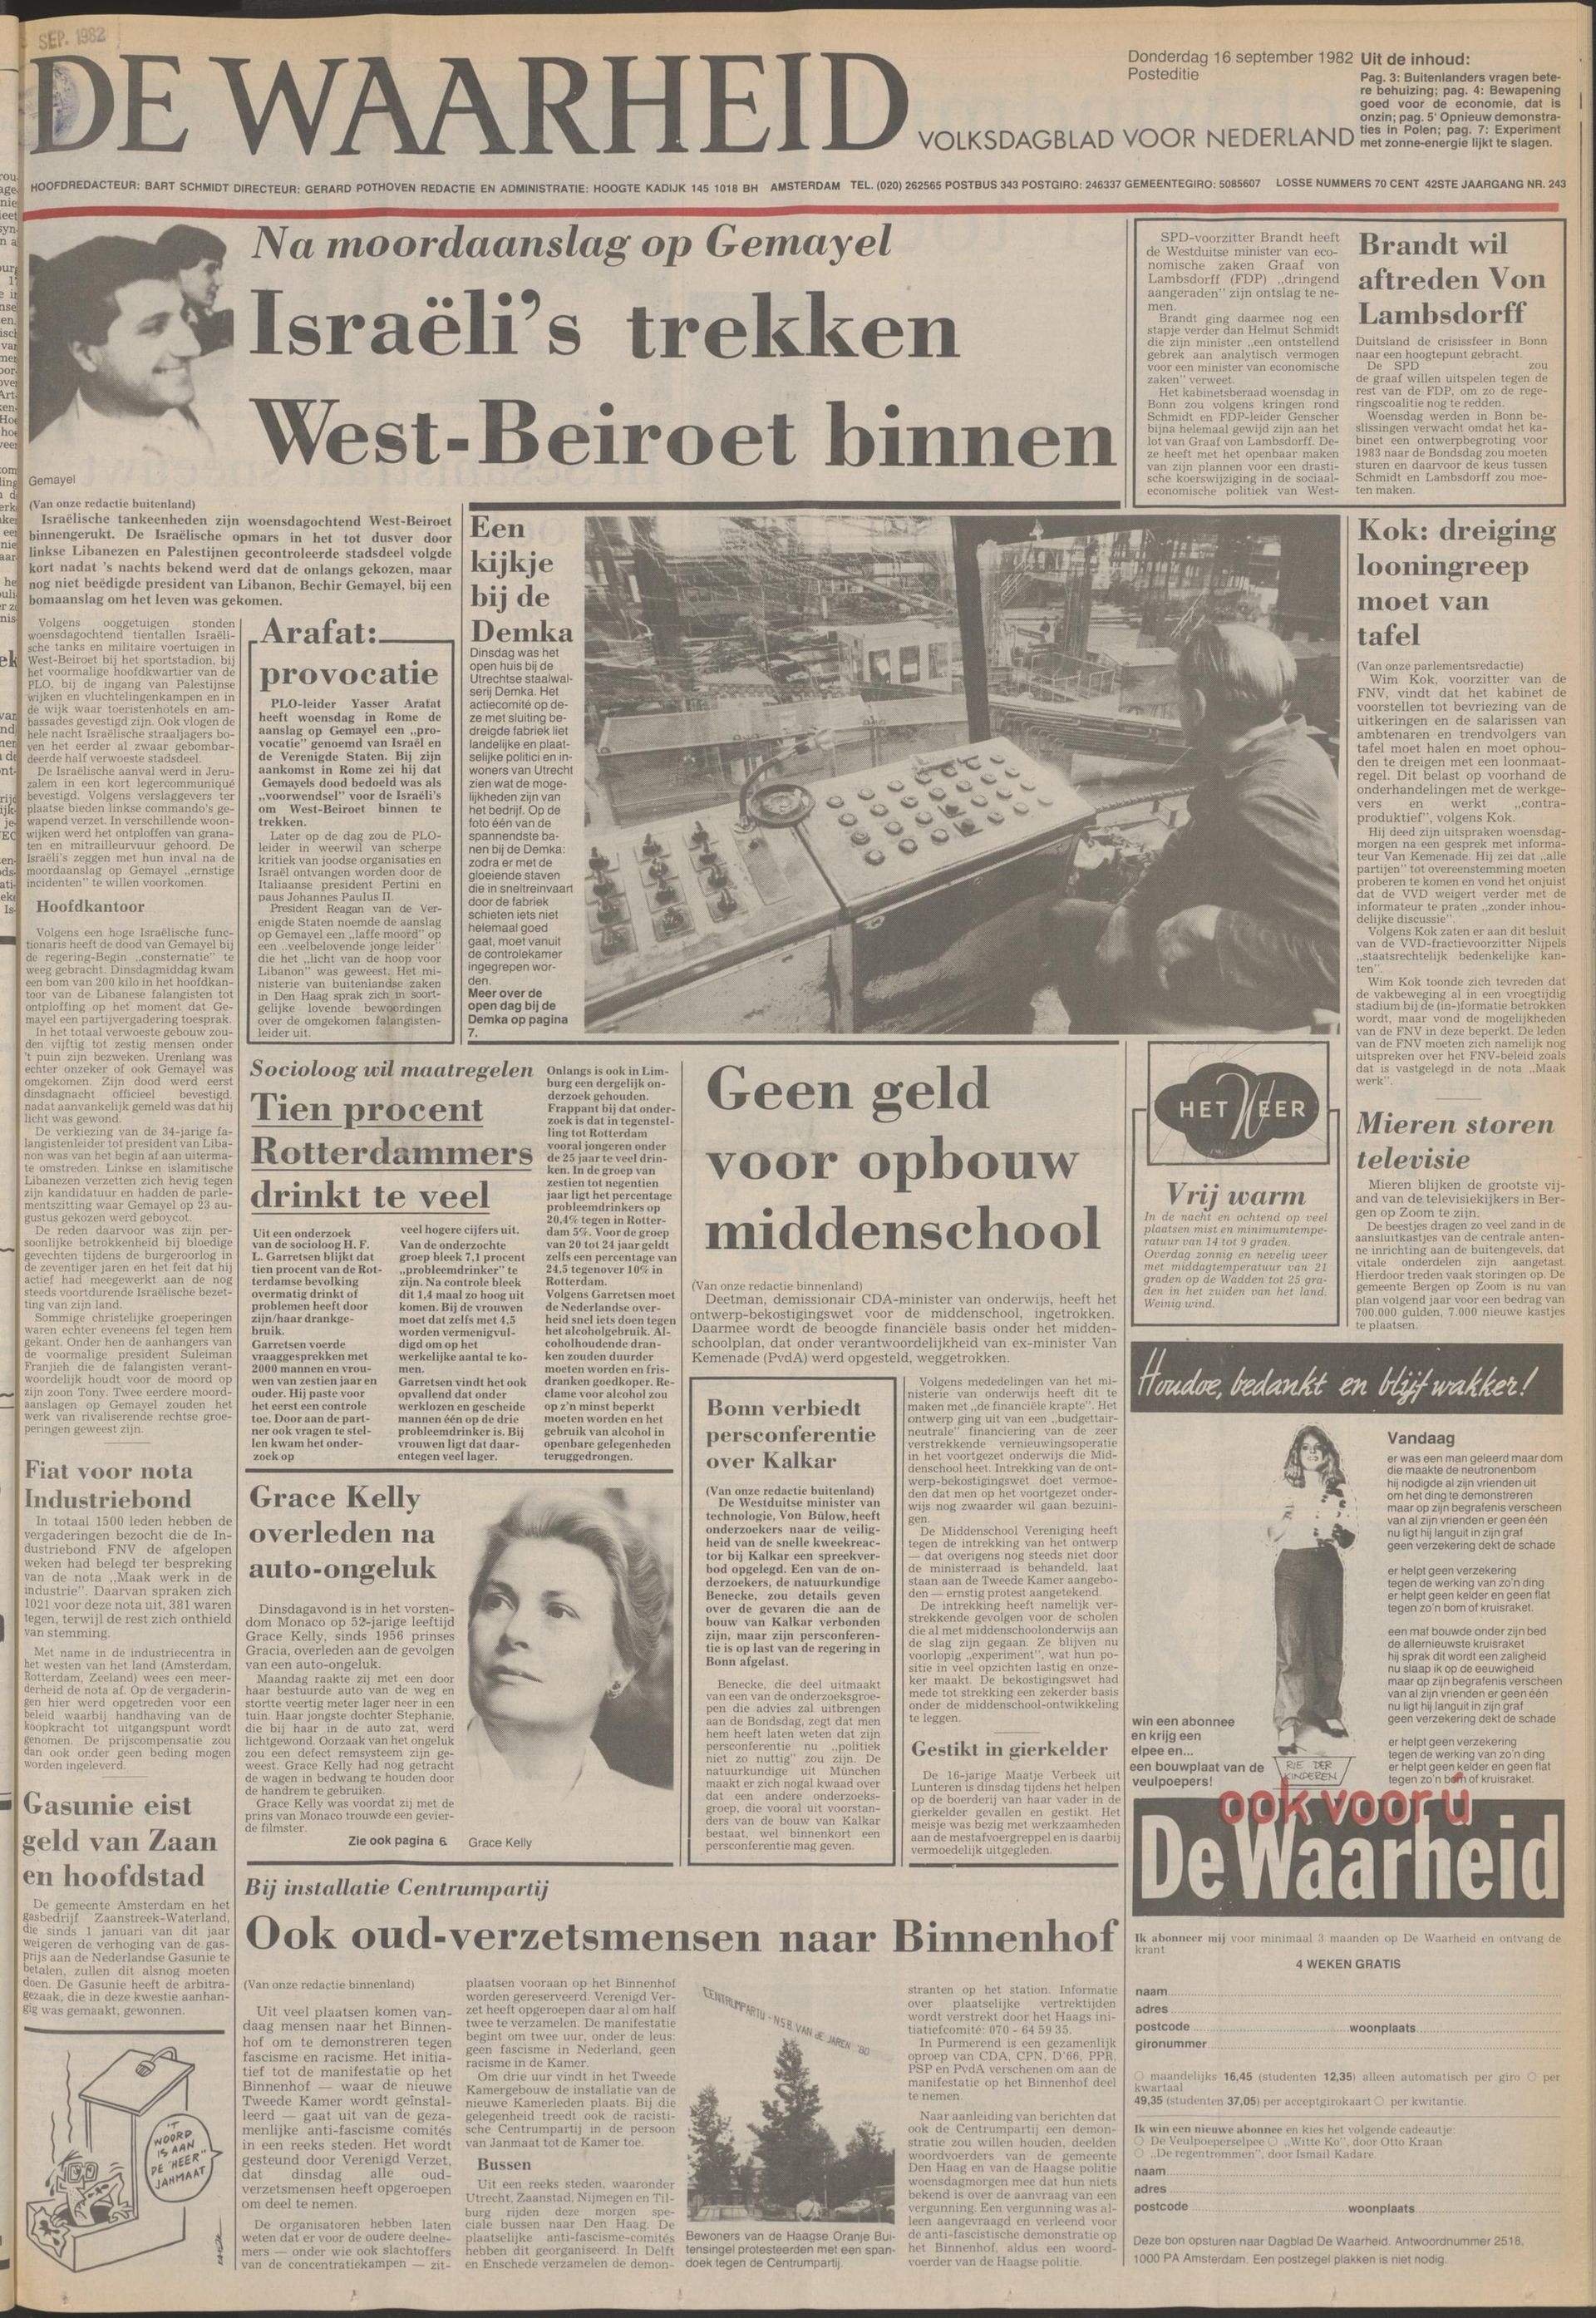 De Waarheid, 16 september 1982.